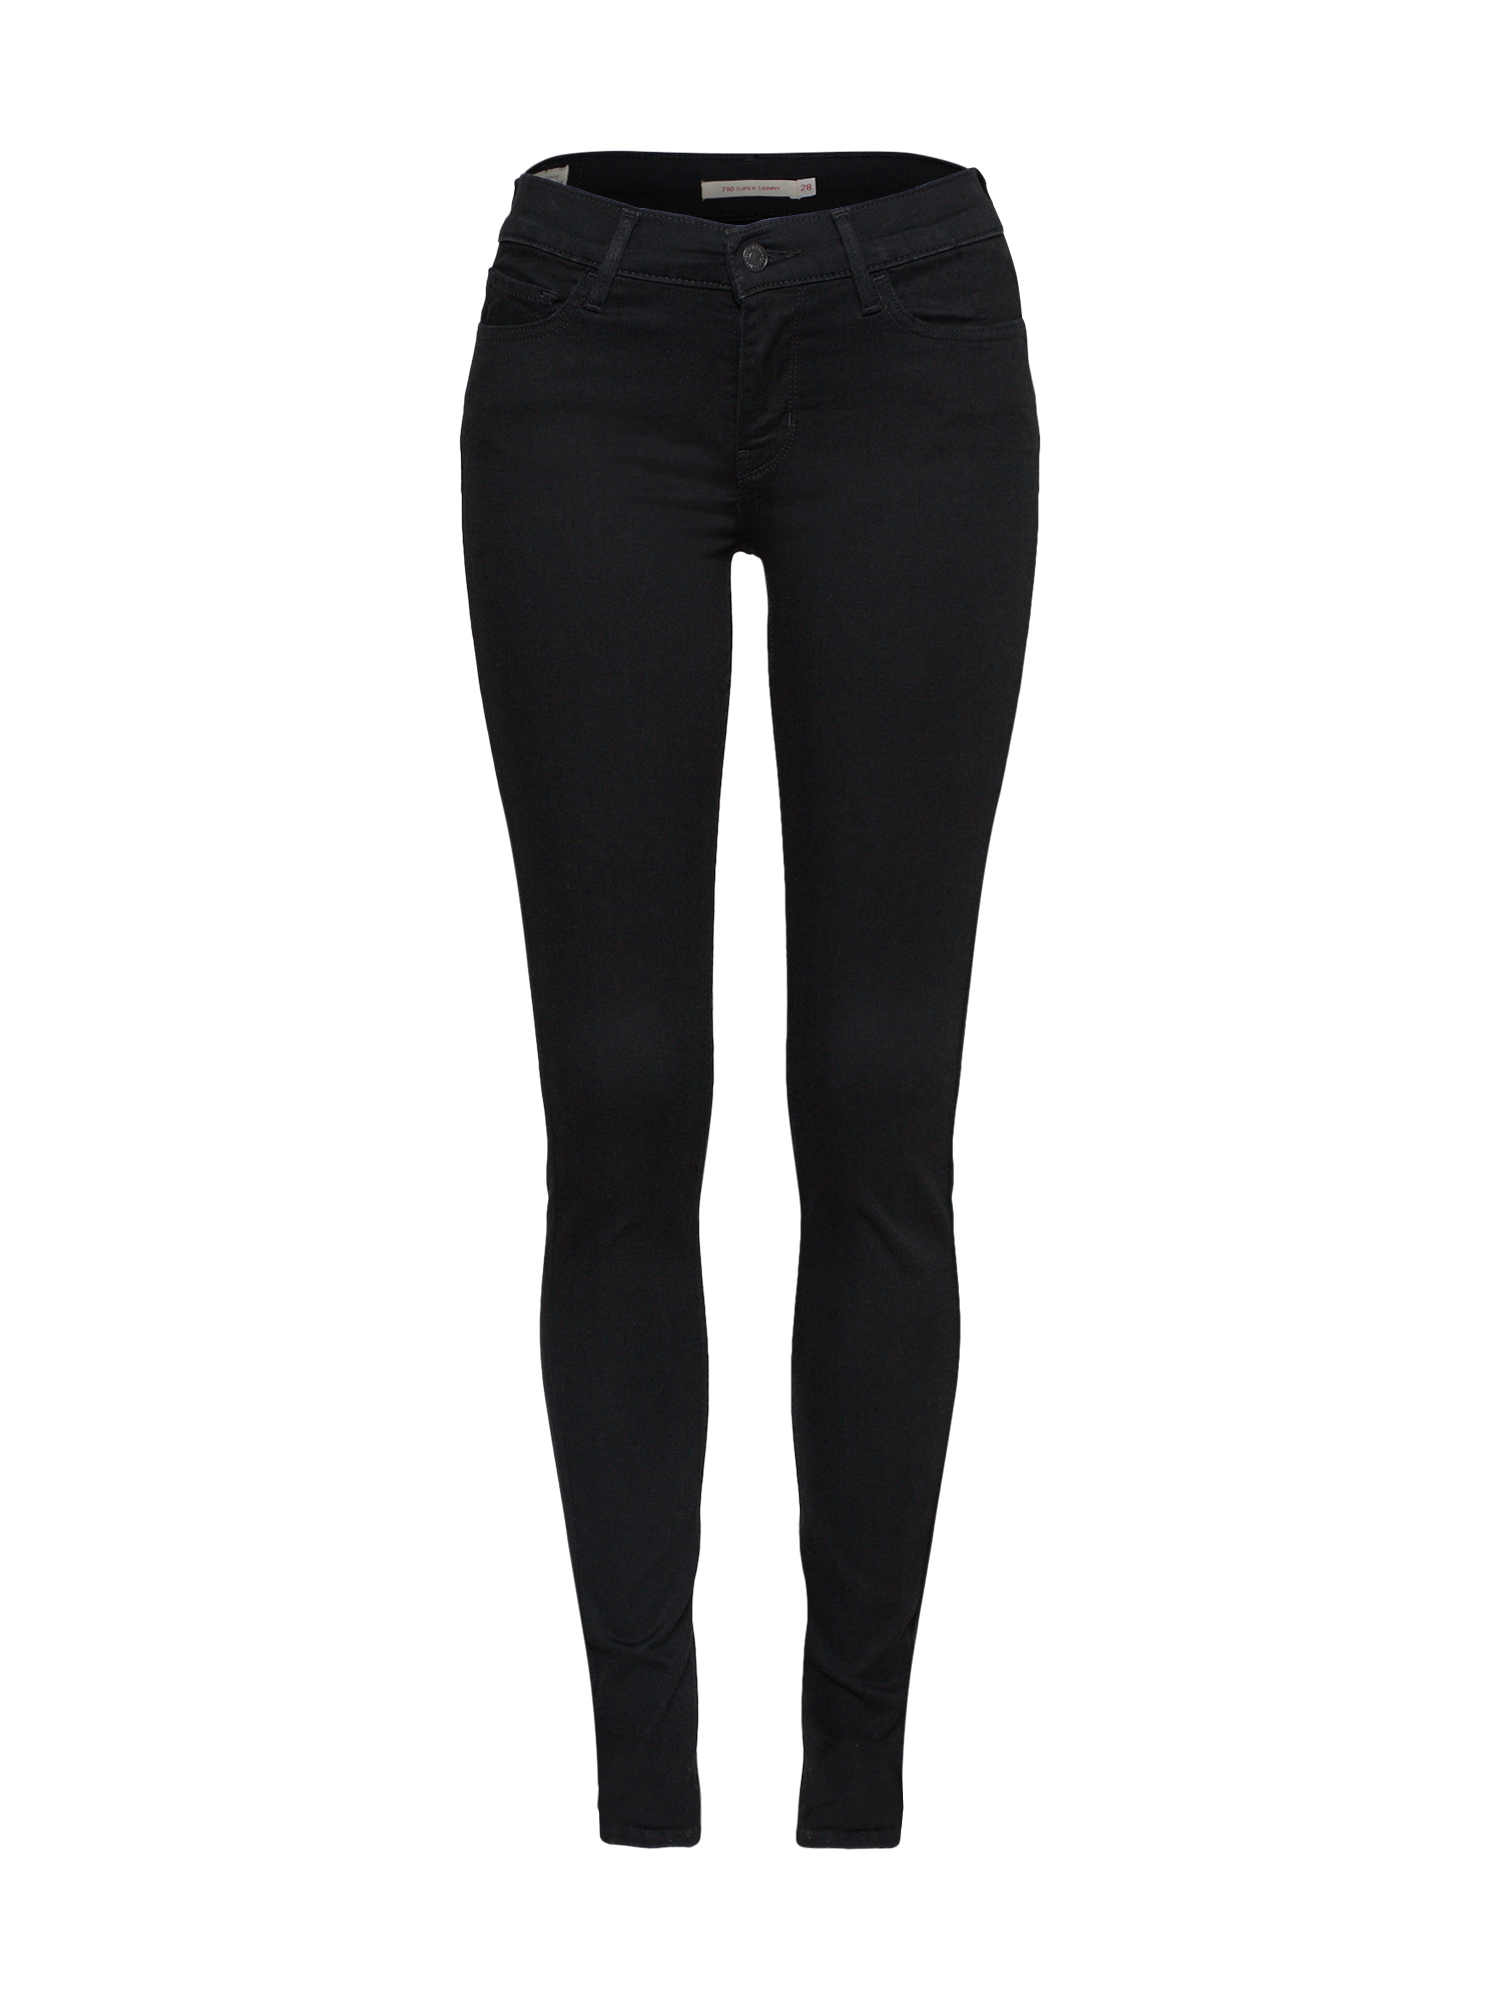 LEVIS Jeansy 710 Innovation Super Skinny w kolorze Czarnym 